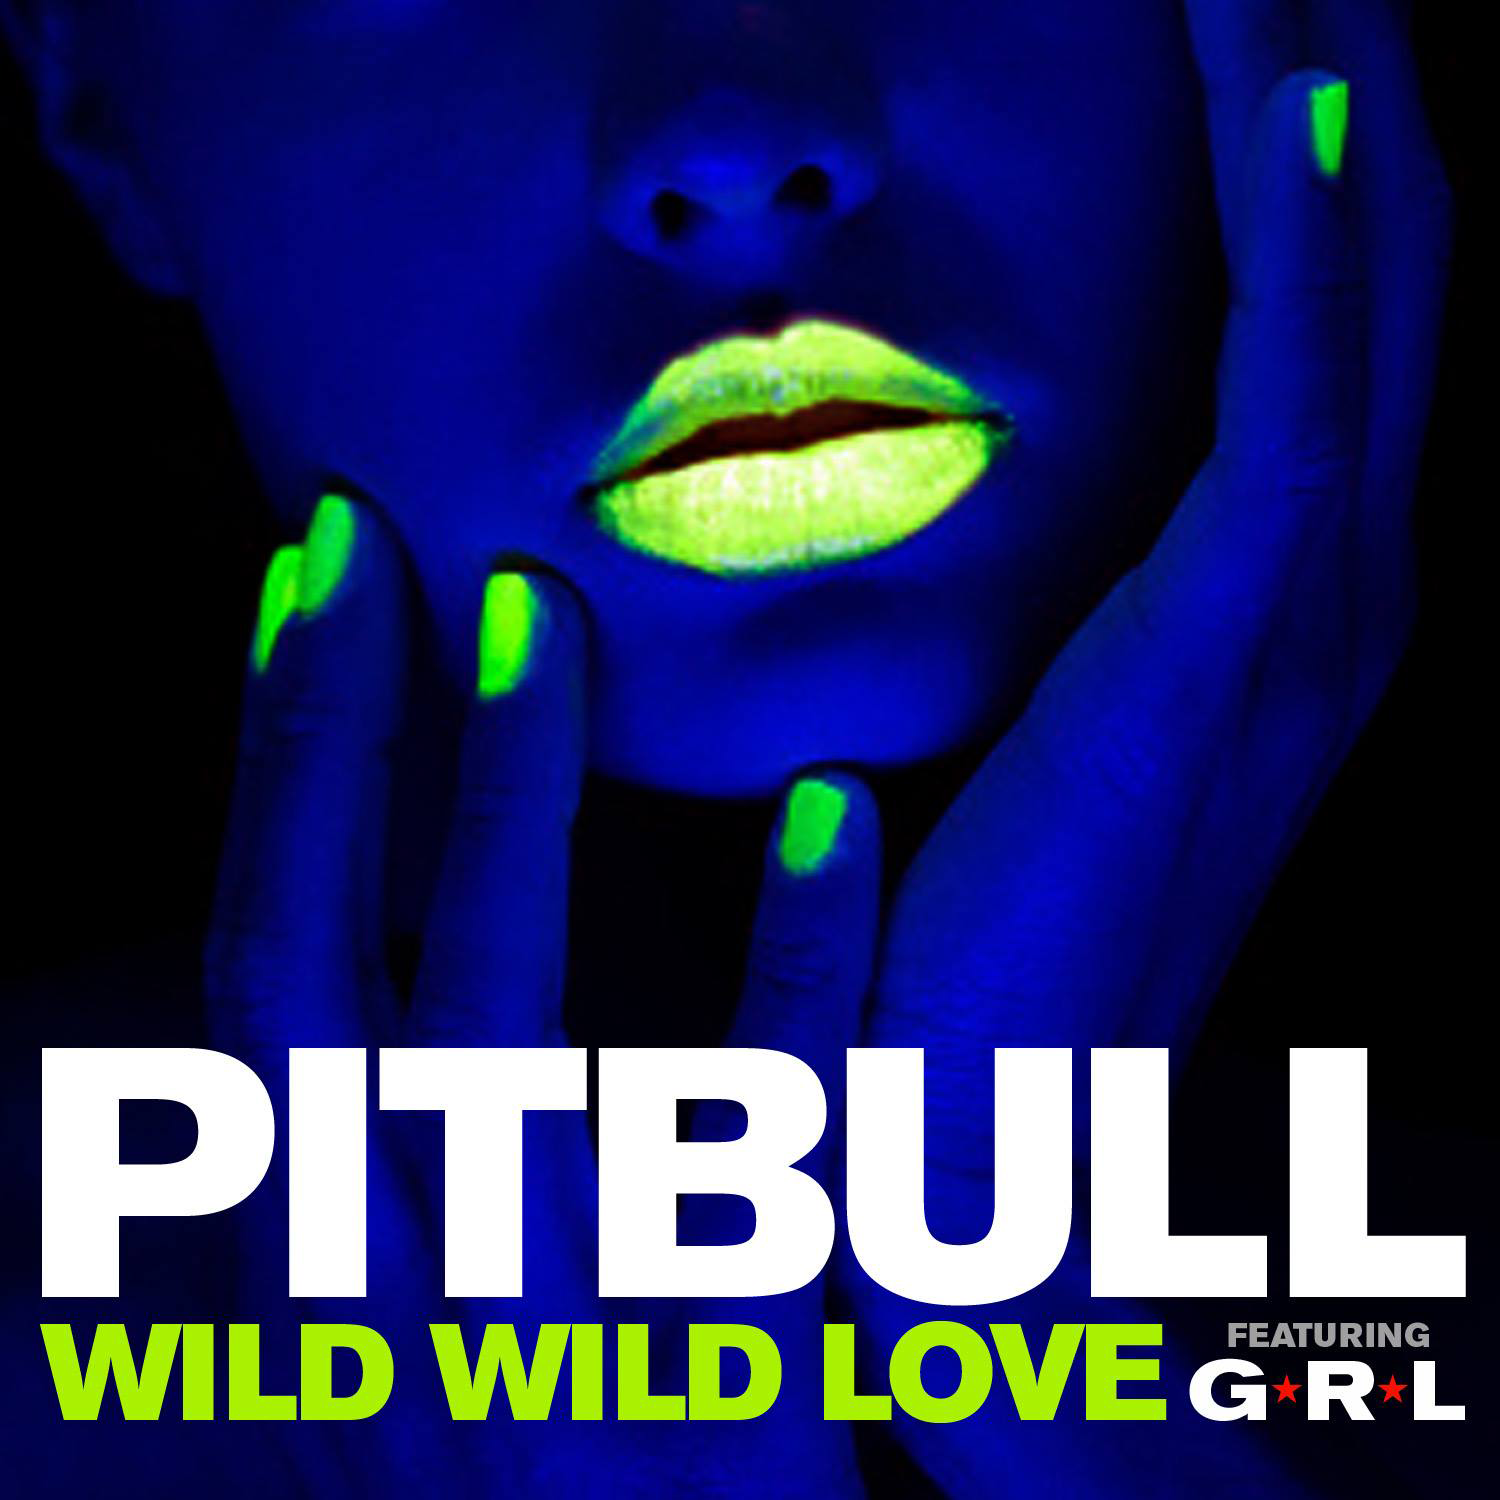 Pitbull – Wild Wild Love ft. G.R.L